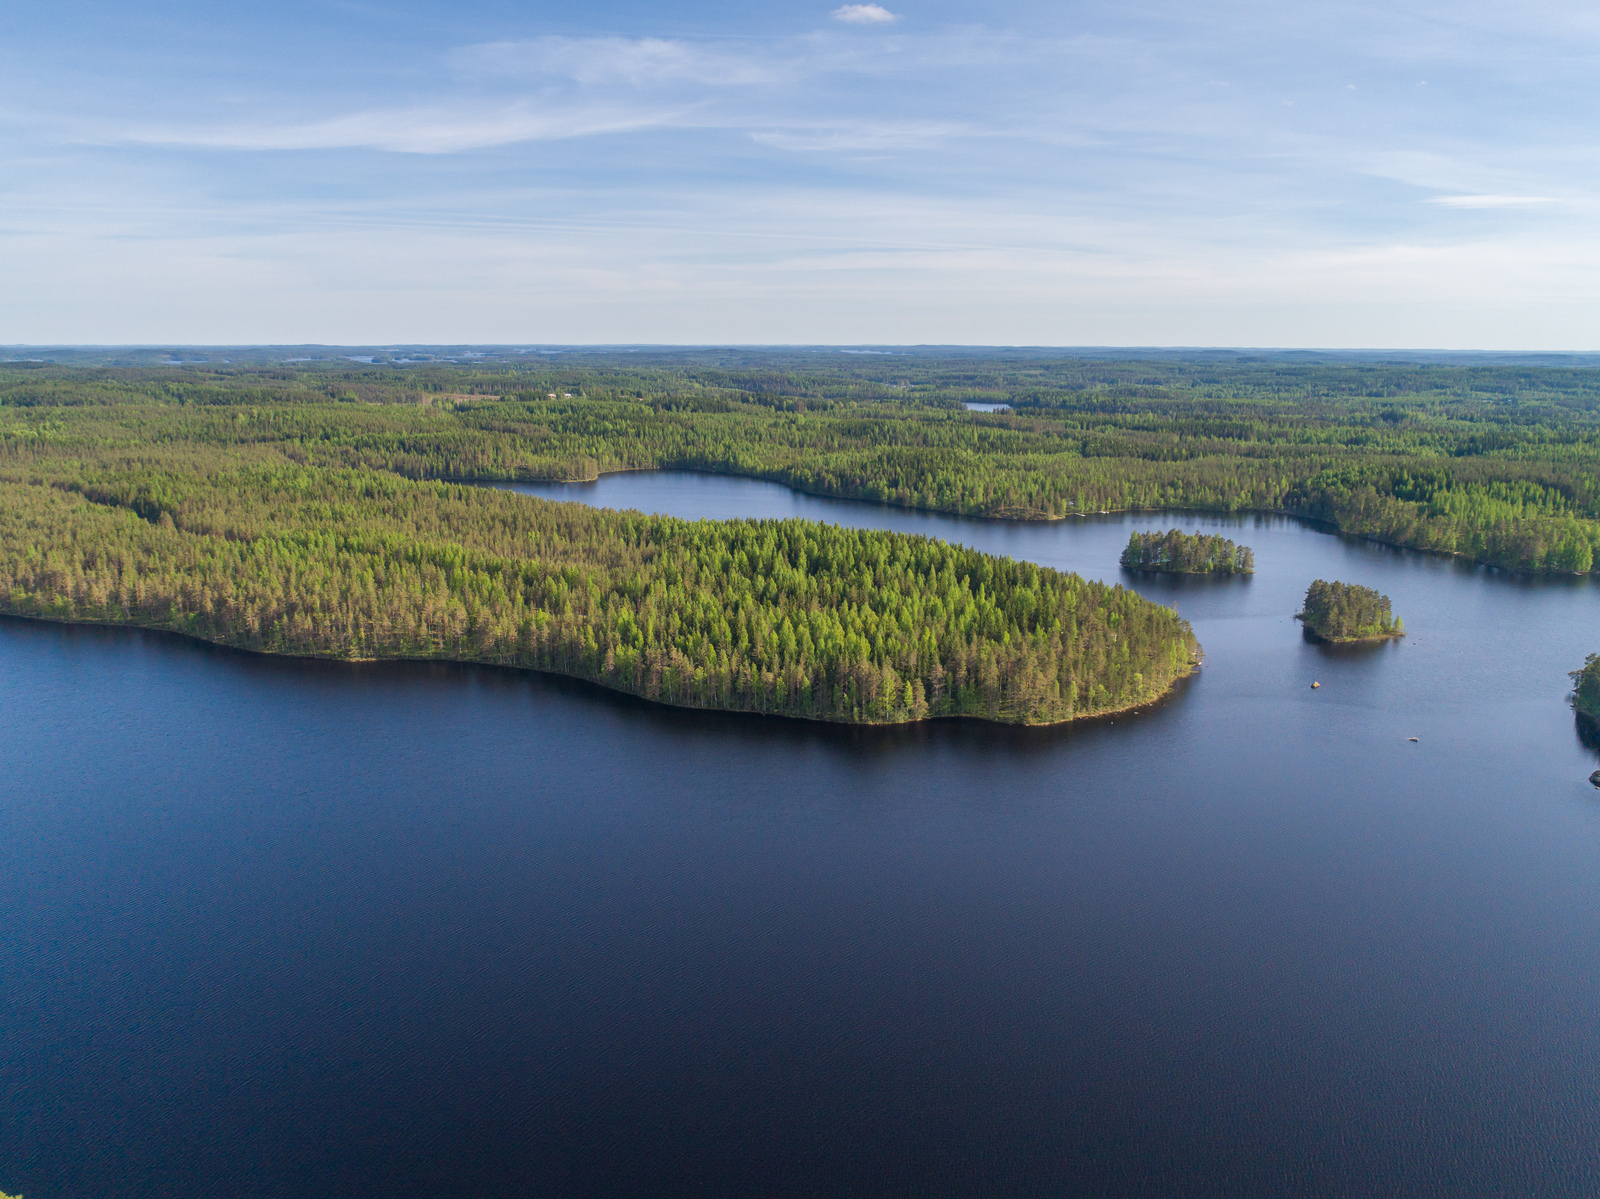 Kesämaisemassa metsät reunustavat suurta järveä, jossa on kaksi saarta. Ilmakuva.